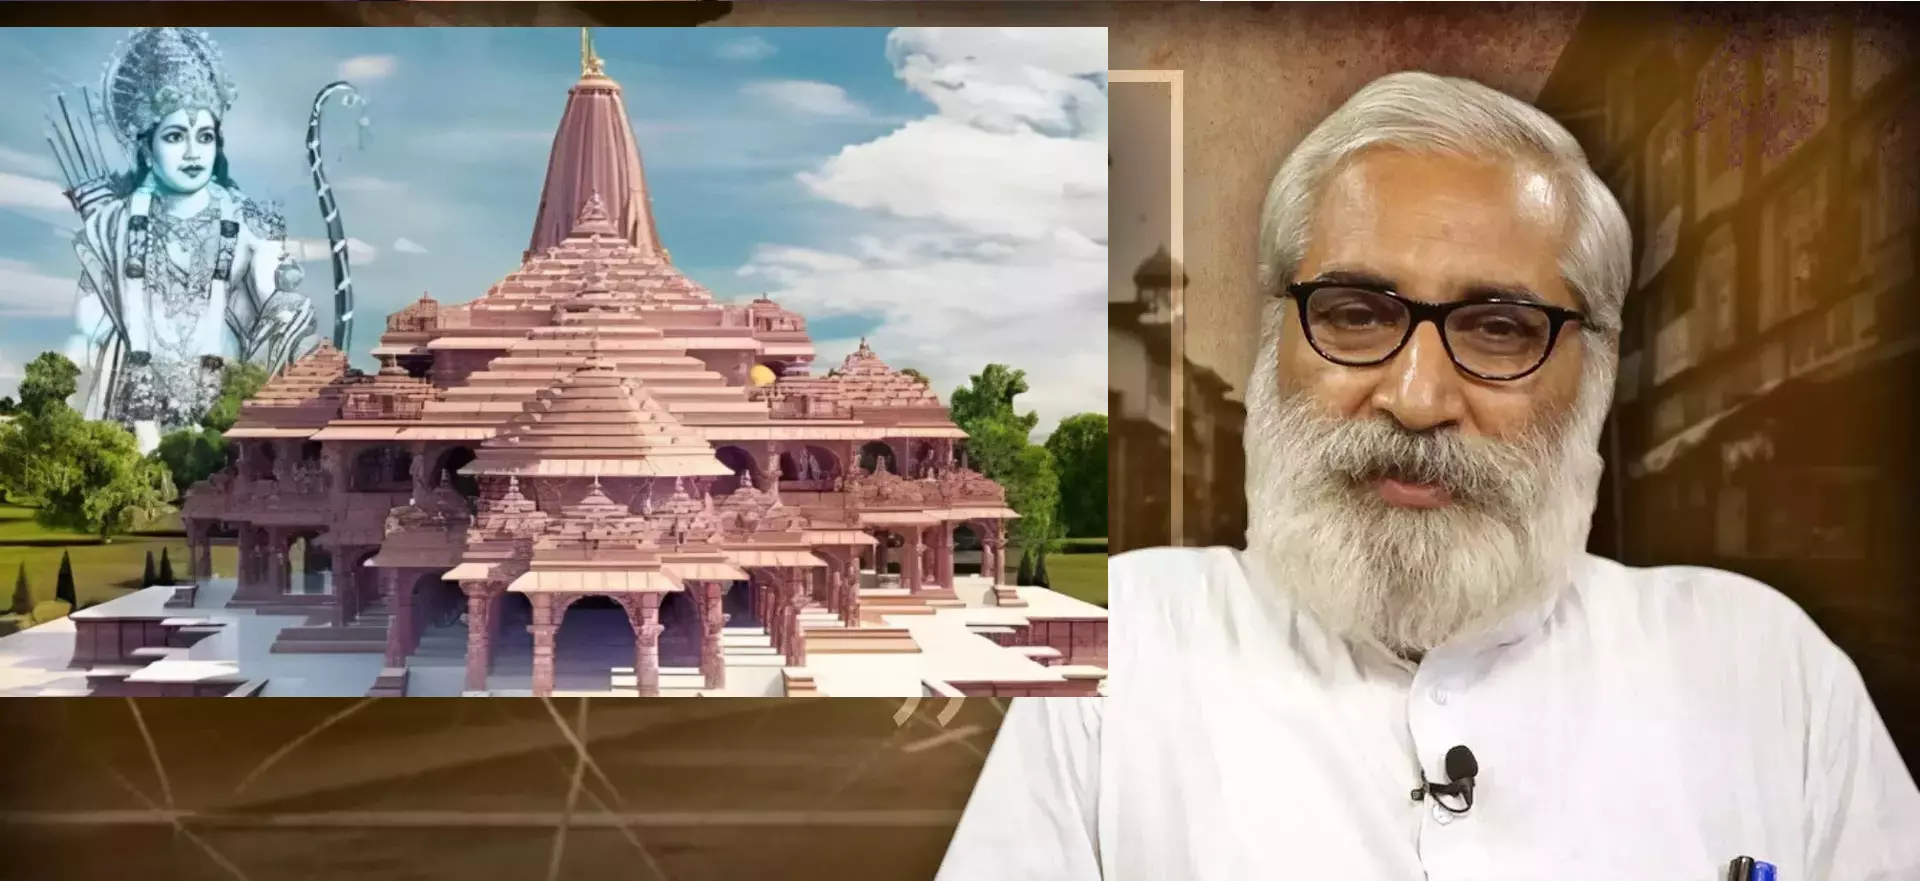 यह राजनीतिक मंदिर है, इसका धर्म से कोई नाता नहीं है, अनुदेशक, शिक्षामित्र दाने दाने को मोहताज है - डॉ संदीप पाण्डेय